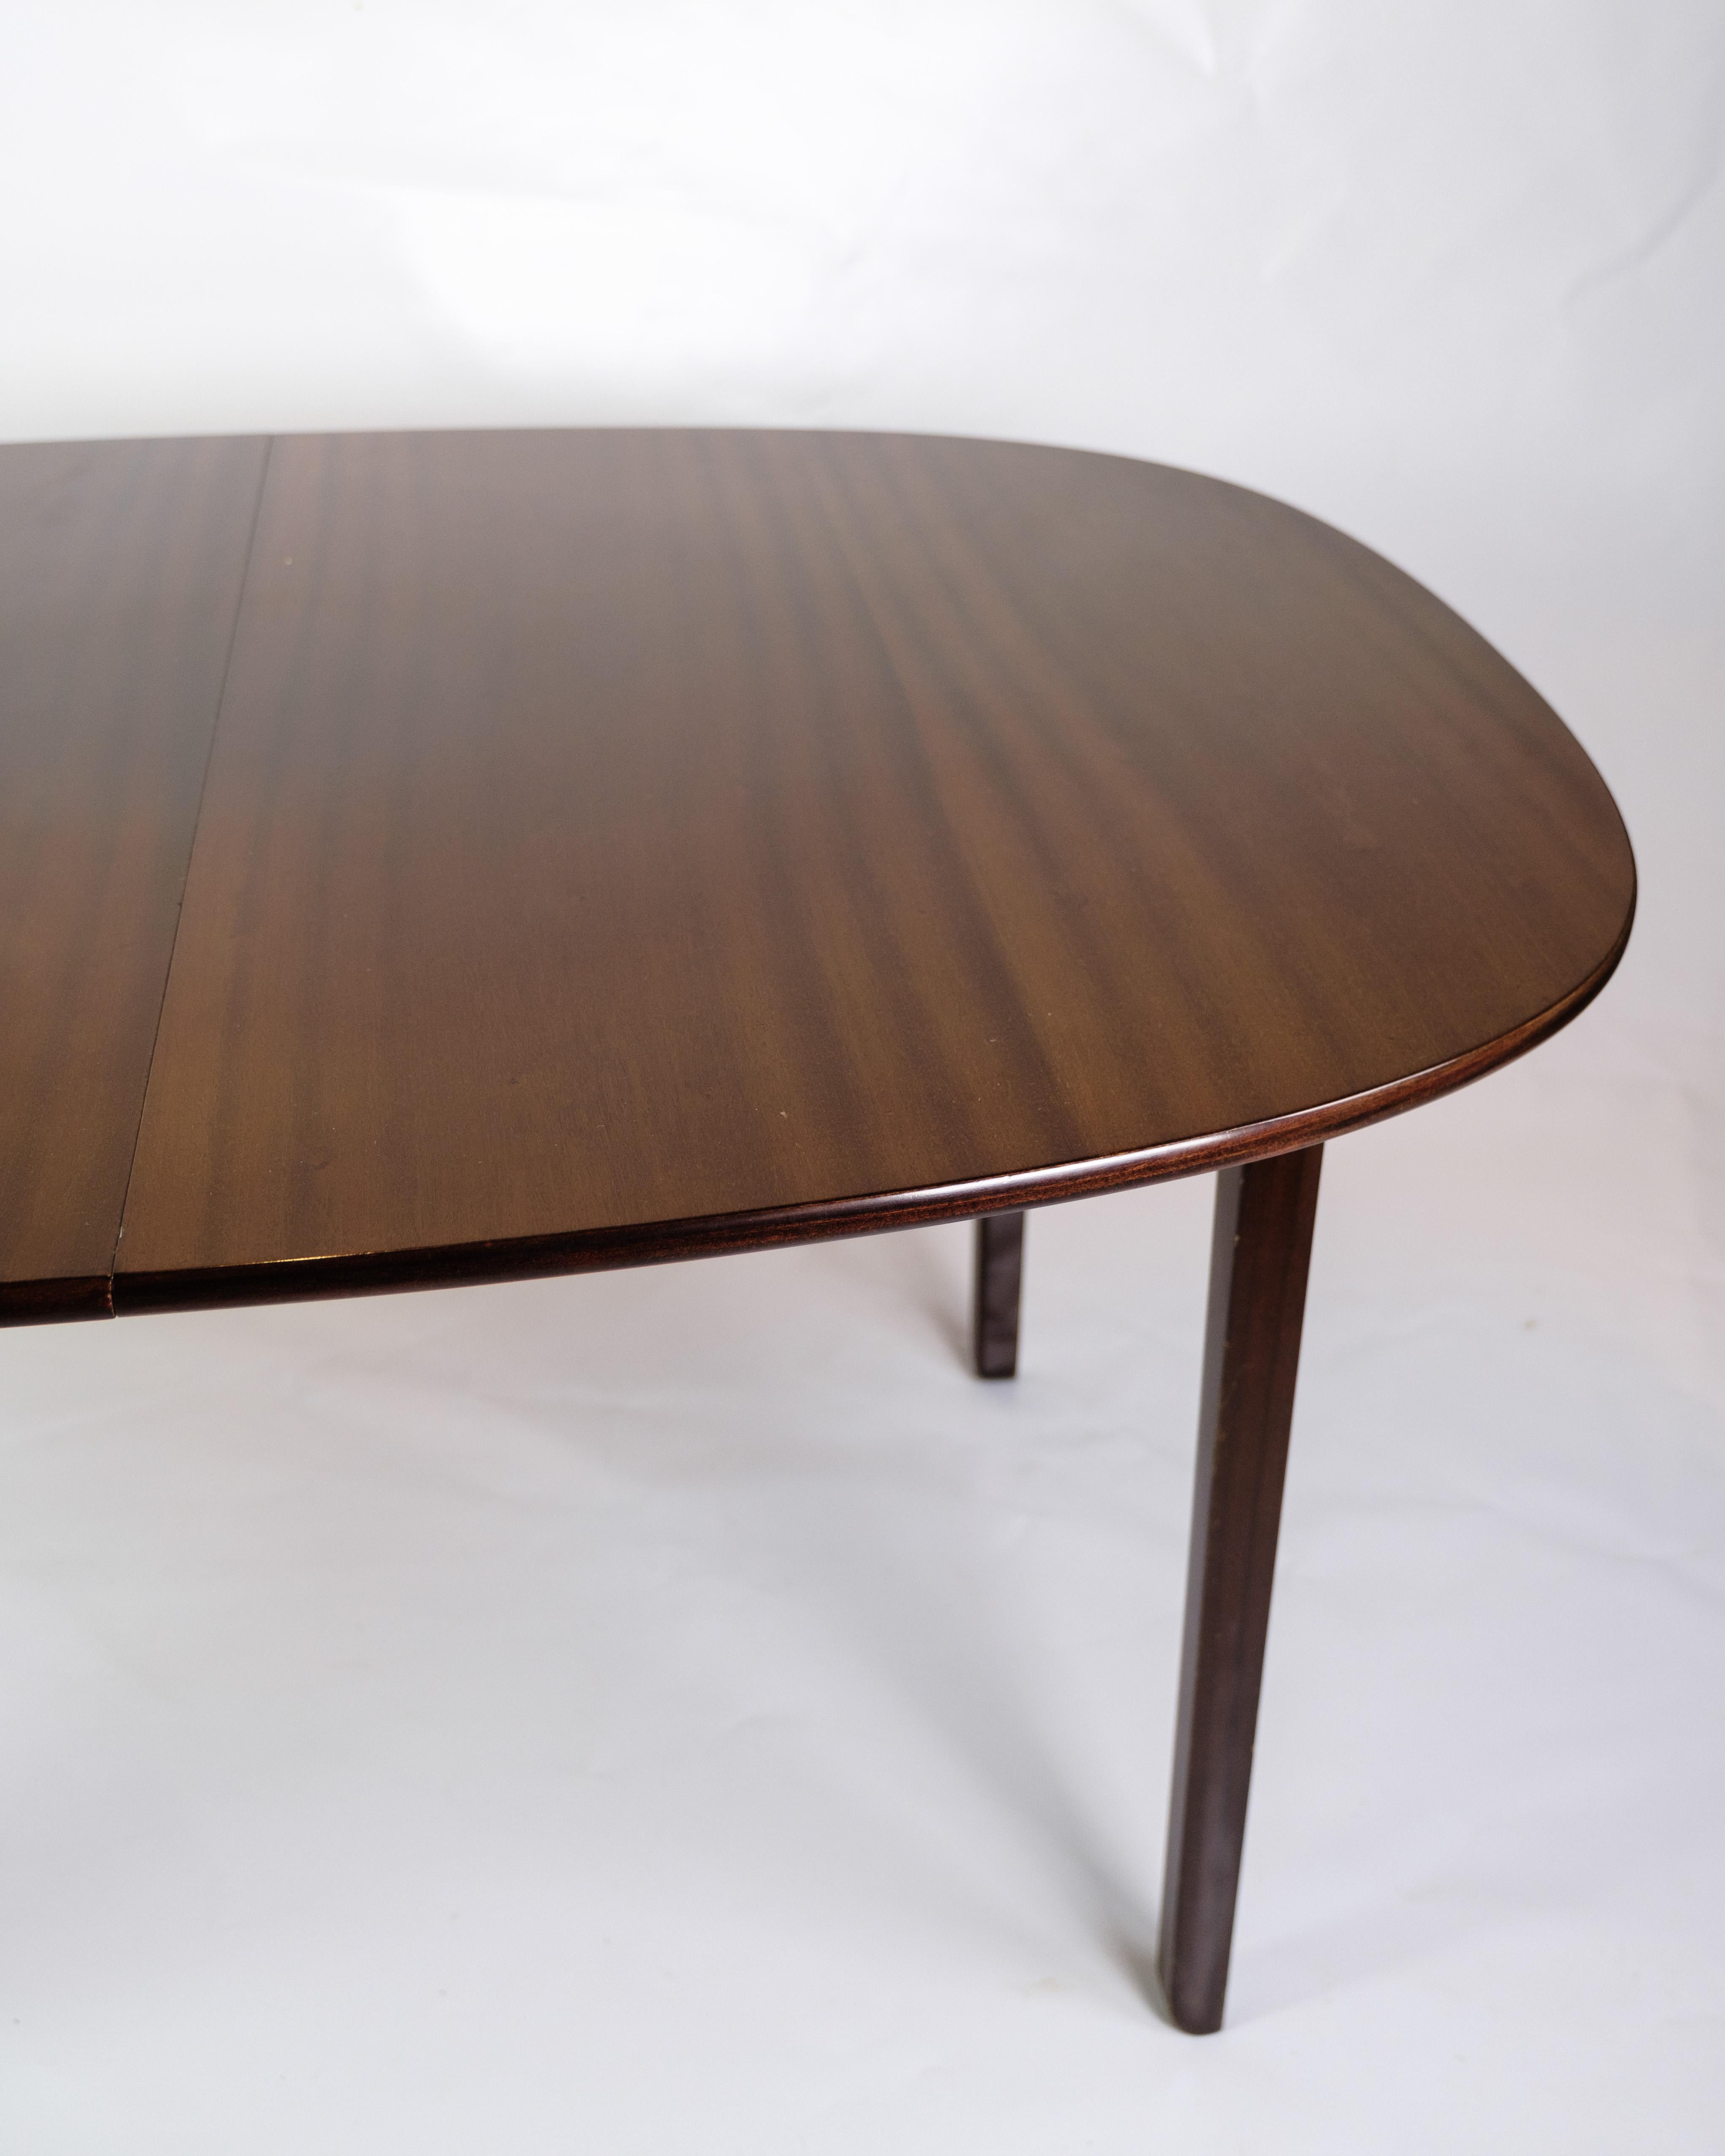 Der Esstisch aus Mahagoni, entworfen von dem berühmten Ole Wanscher und hergestellt von P. Jeppesen im Jahr 1960, ist ein elegantes und zeitloses Stück dänischen Möbeldesigns.

Das für den Tisch verwendete Mahagoniholz verleiht jedem Essbereich eine